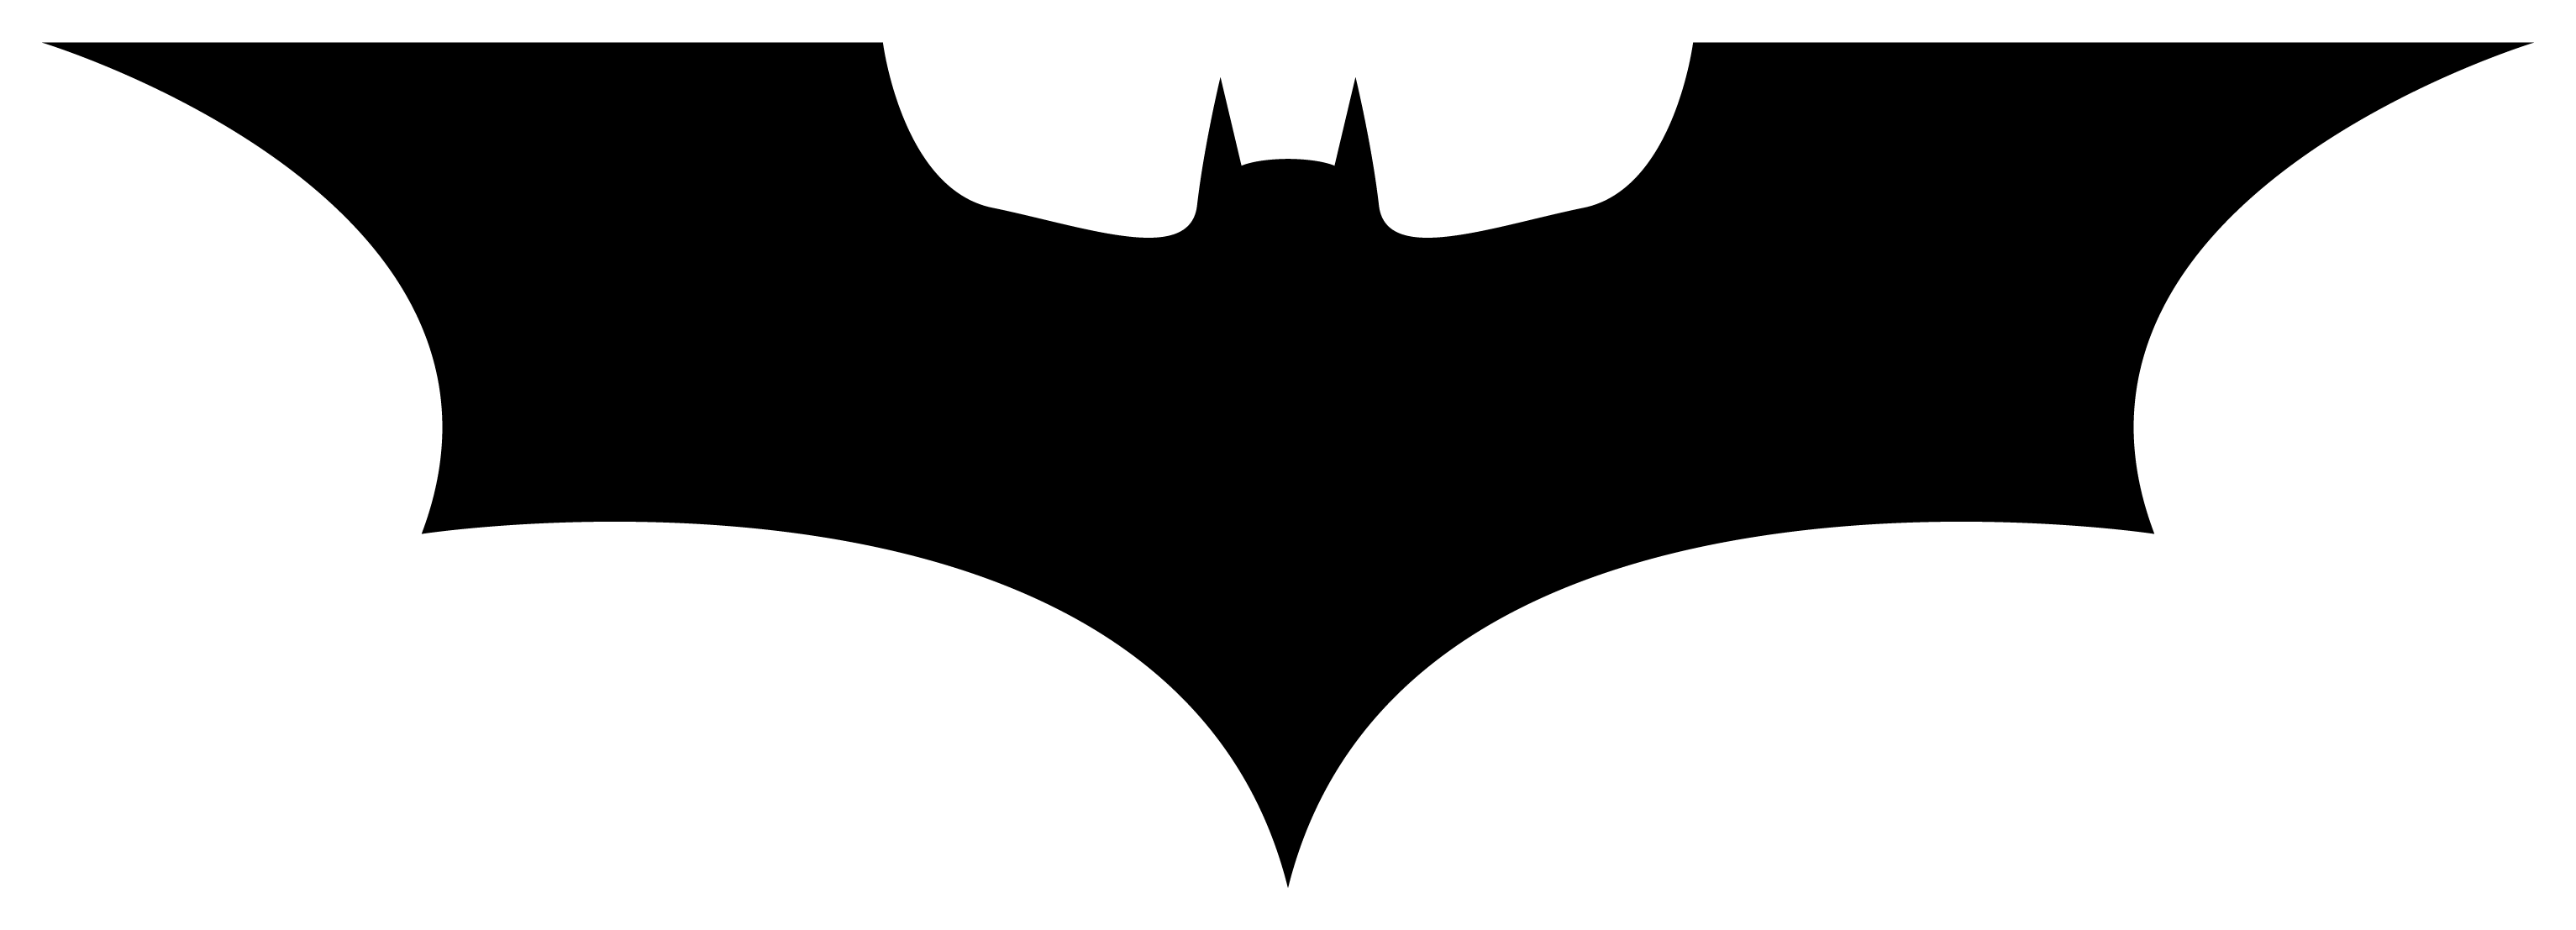 Super Bat Logo - S Batman Logo Begins, Dark Knight Rises, DC Comics